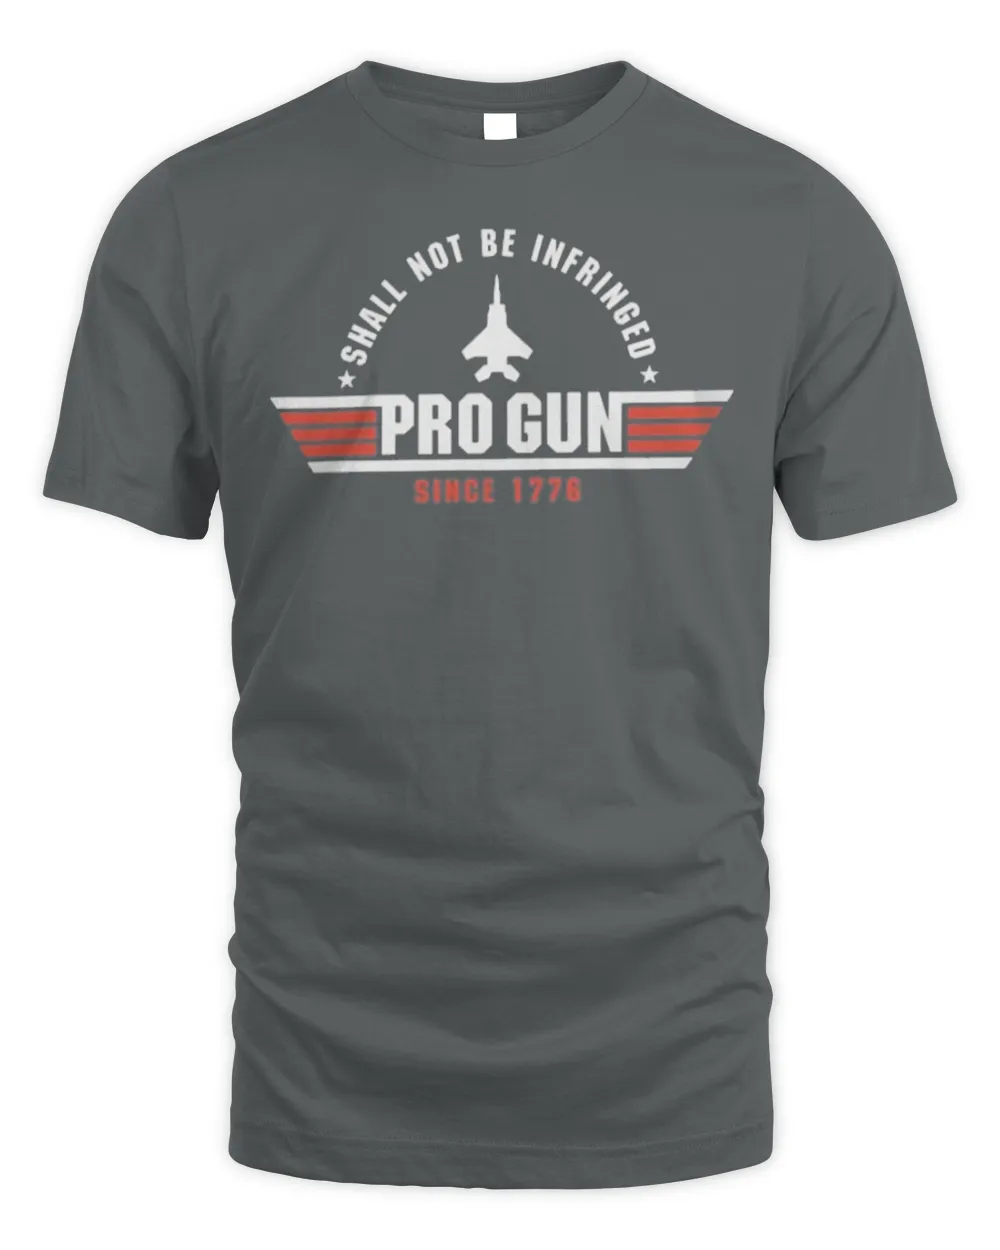 Shall Not Be Infringed Pro Gun Since 1776 Shirt